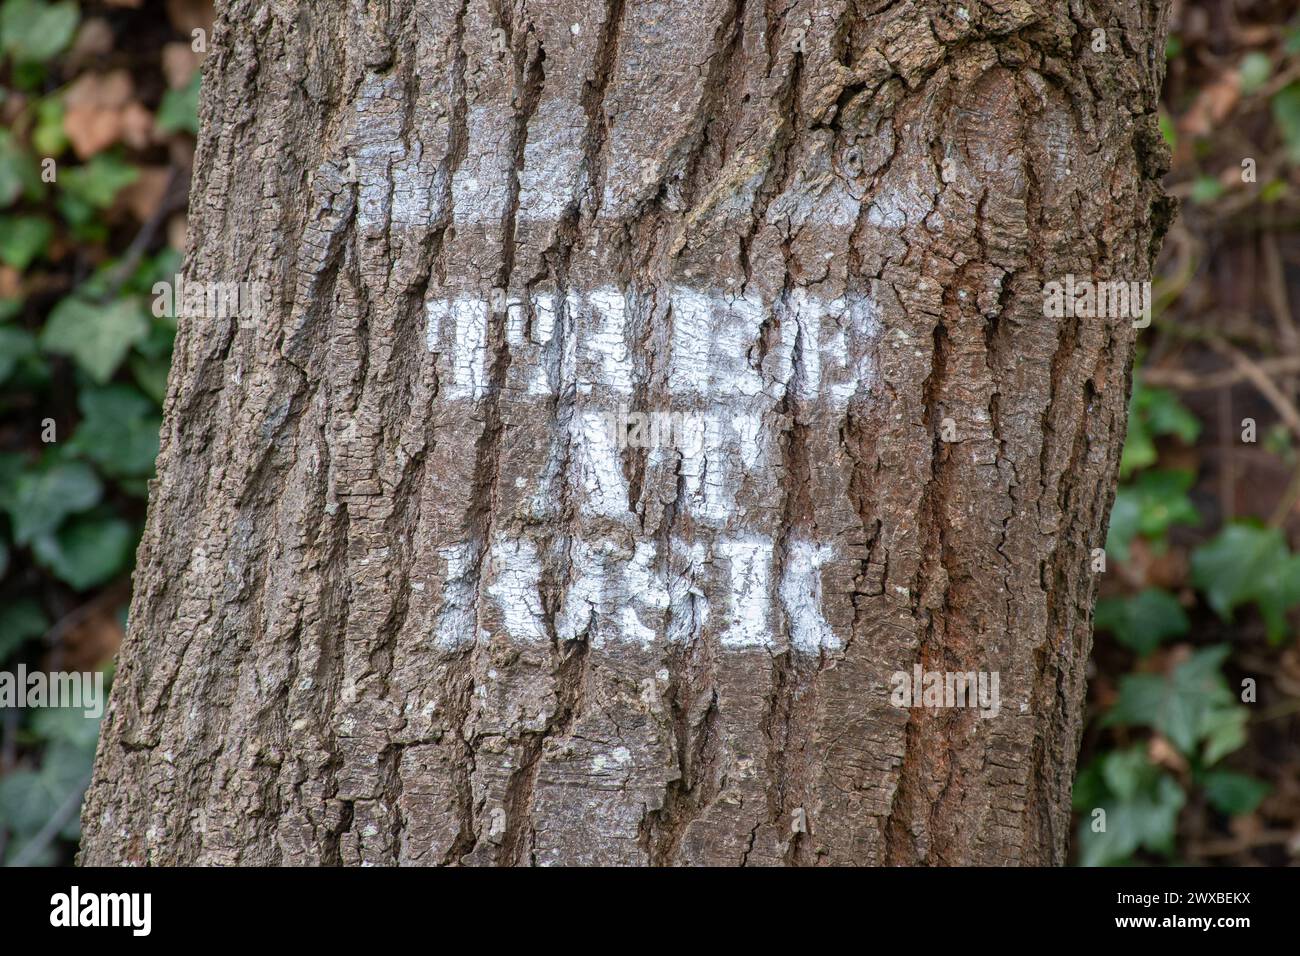 Tree at Risk texte estampillé sur un arbre dû à être abattu, protégeant les arbres, activisme environnemental Banque D'Images